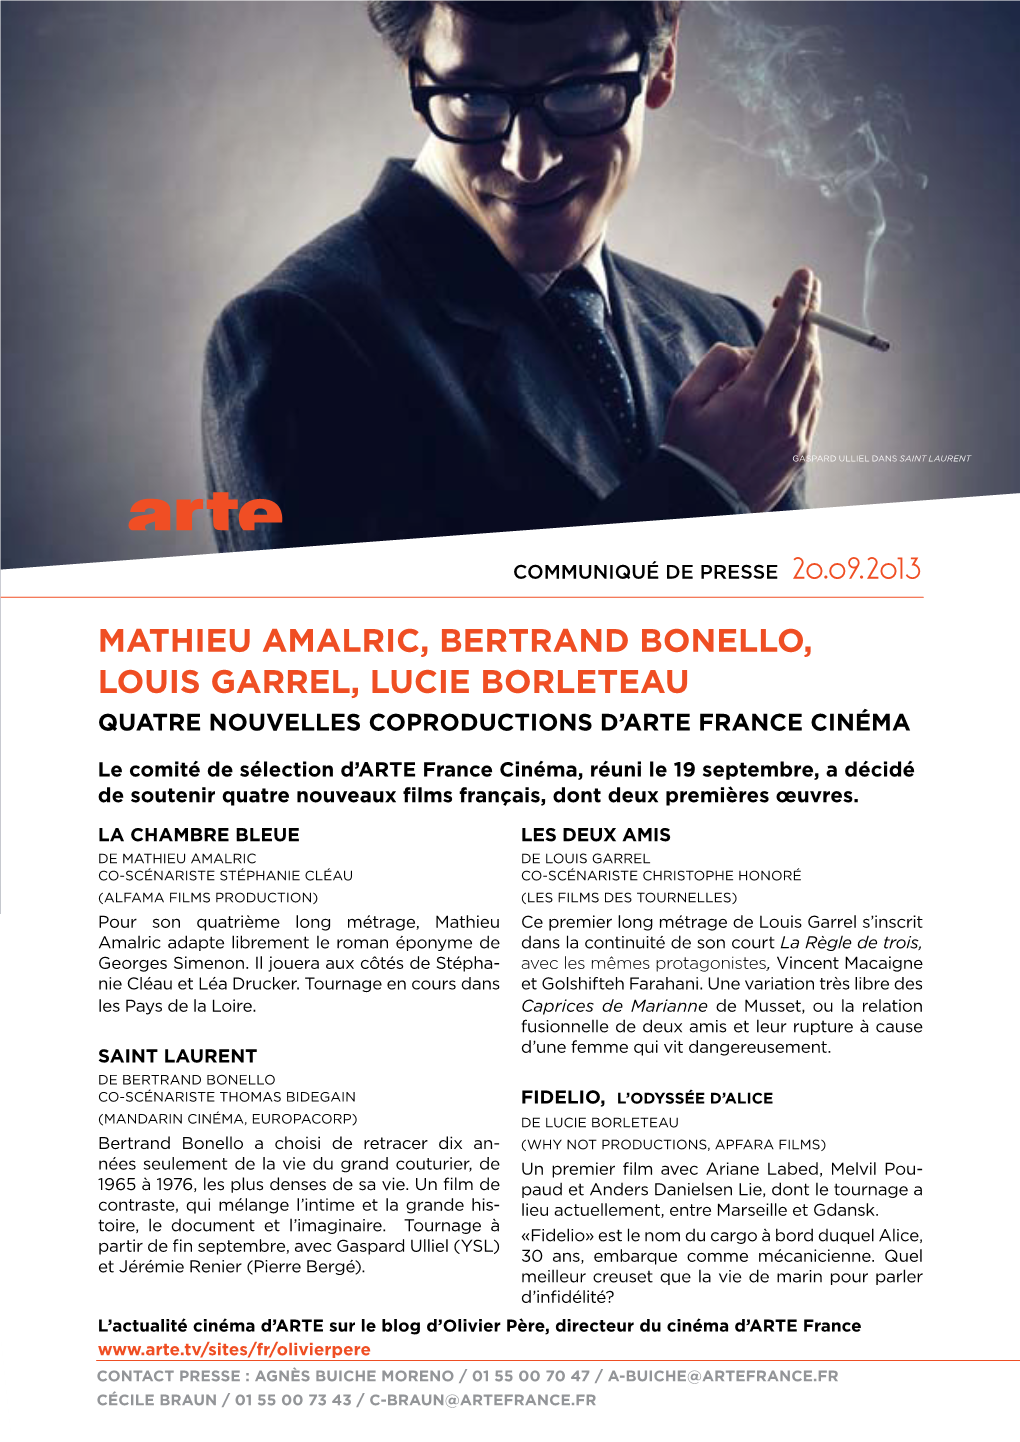 Mathieu Amalric, Bertrand Bonello, Louis Garrel, Lucie Borleteau Quatre Nouvelles Coproductions D’ARTE France Cinéma